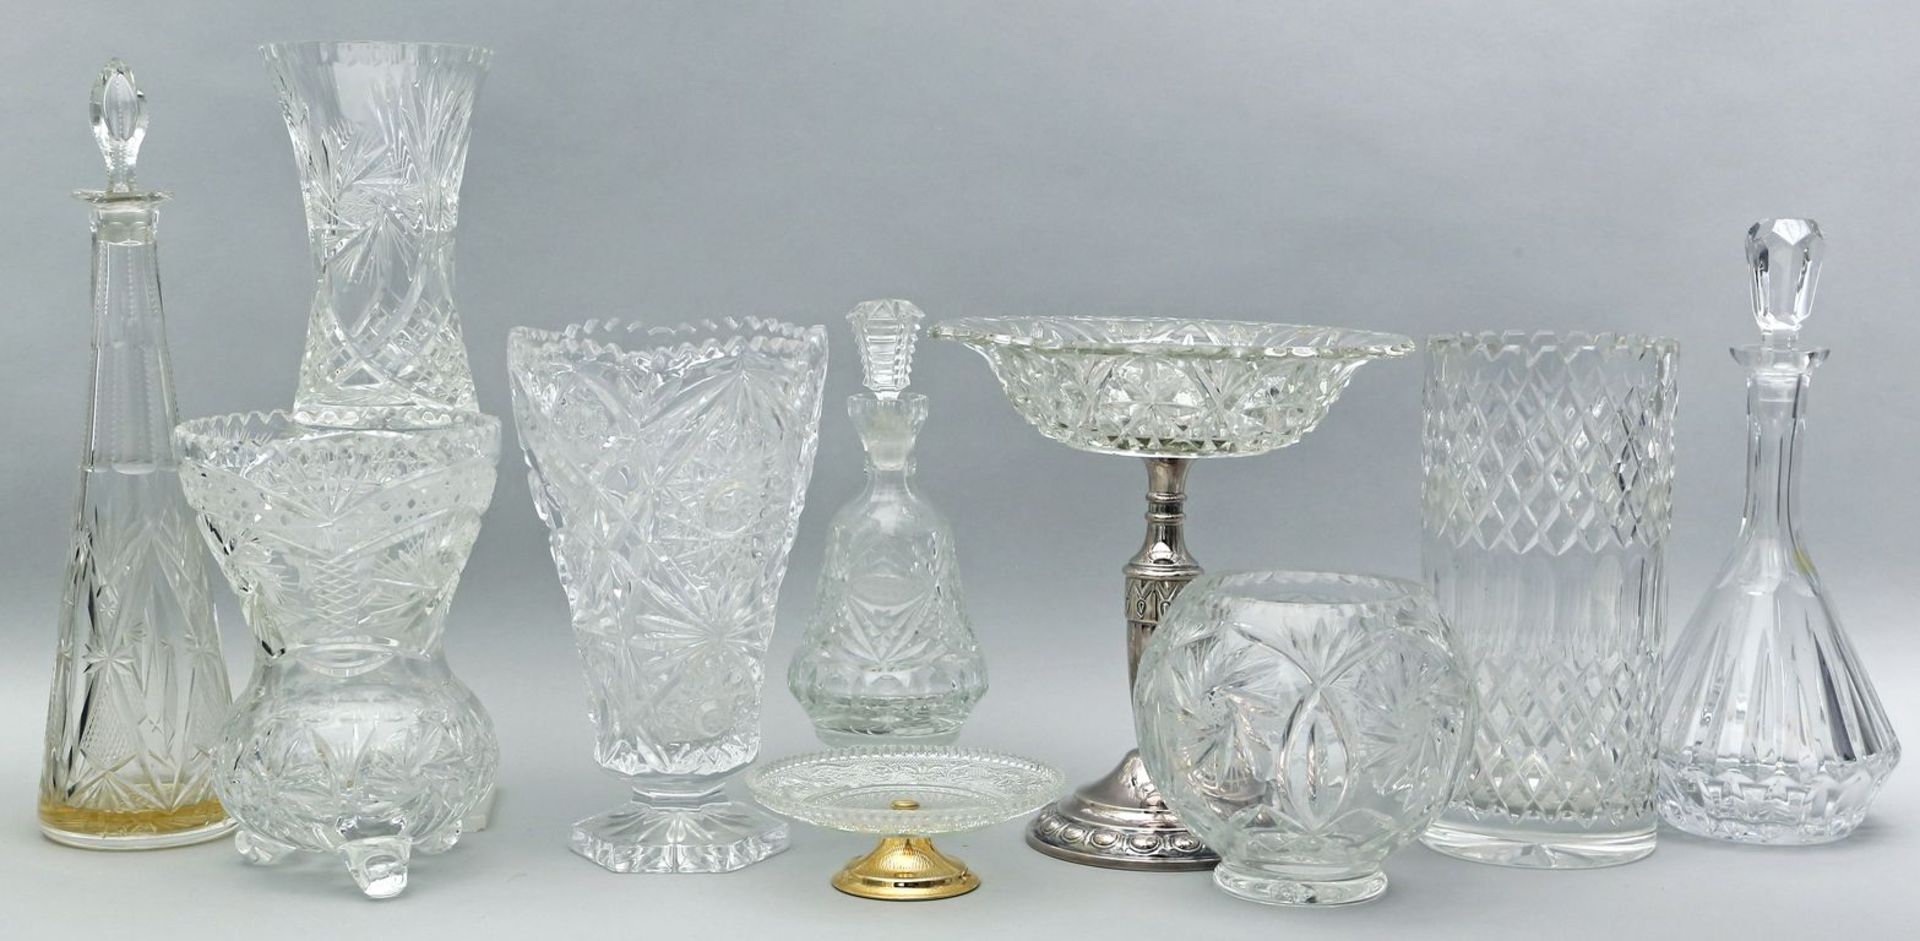 10 Teile Kristall. Farblos, teils mit Schliffdekor. 5 Vasen, 2 Schalen mit Metallmontage und 3